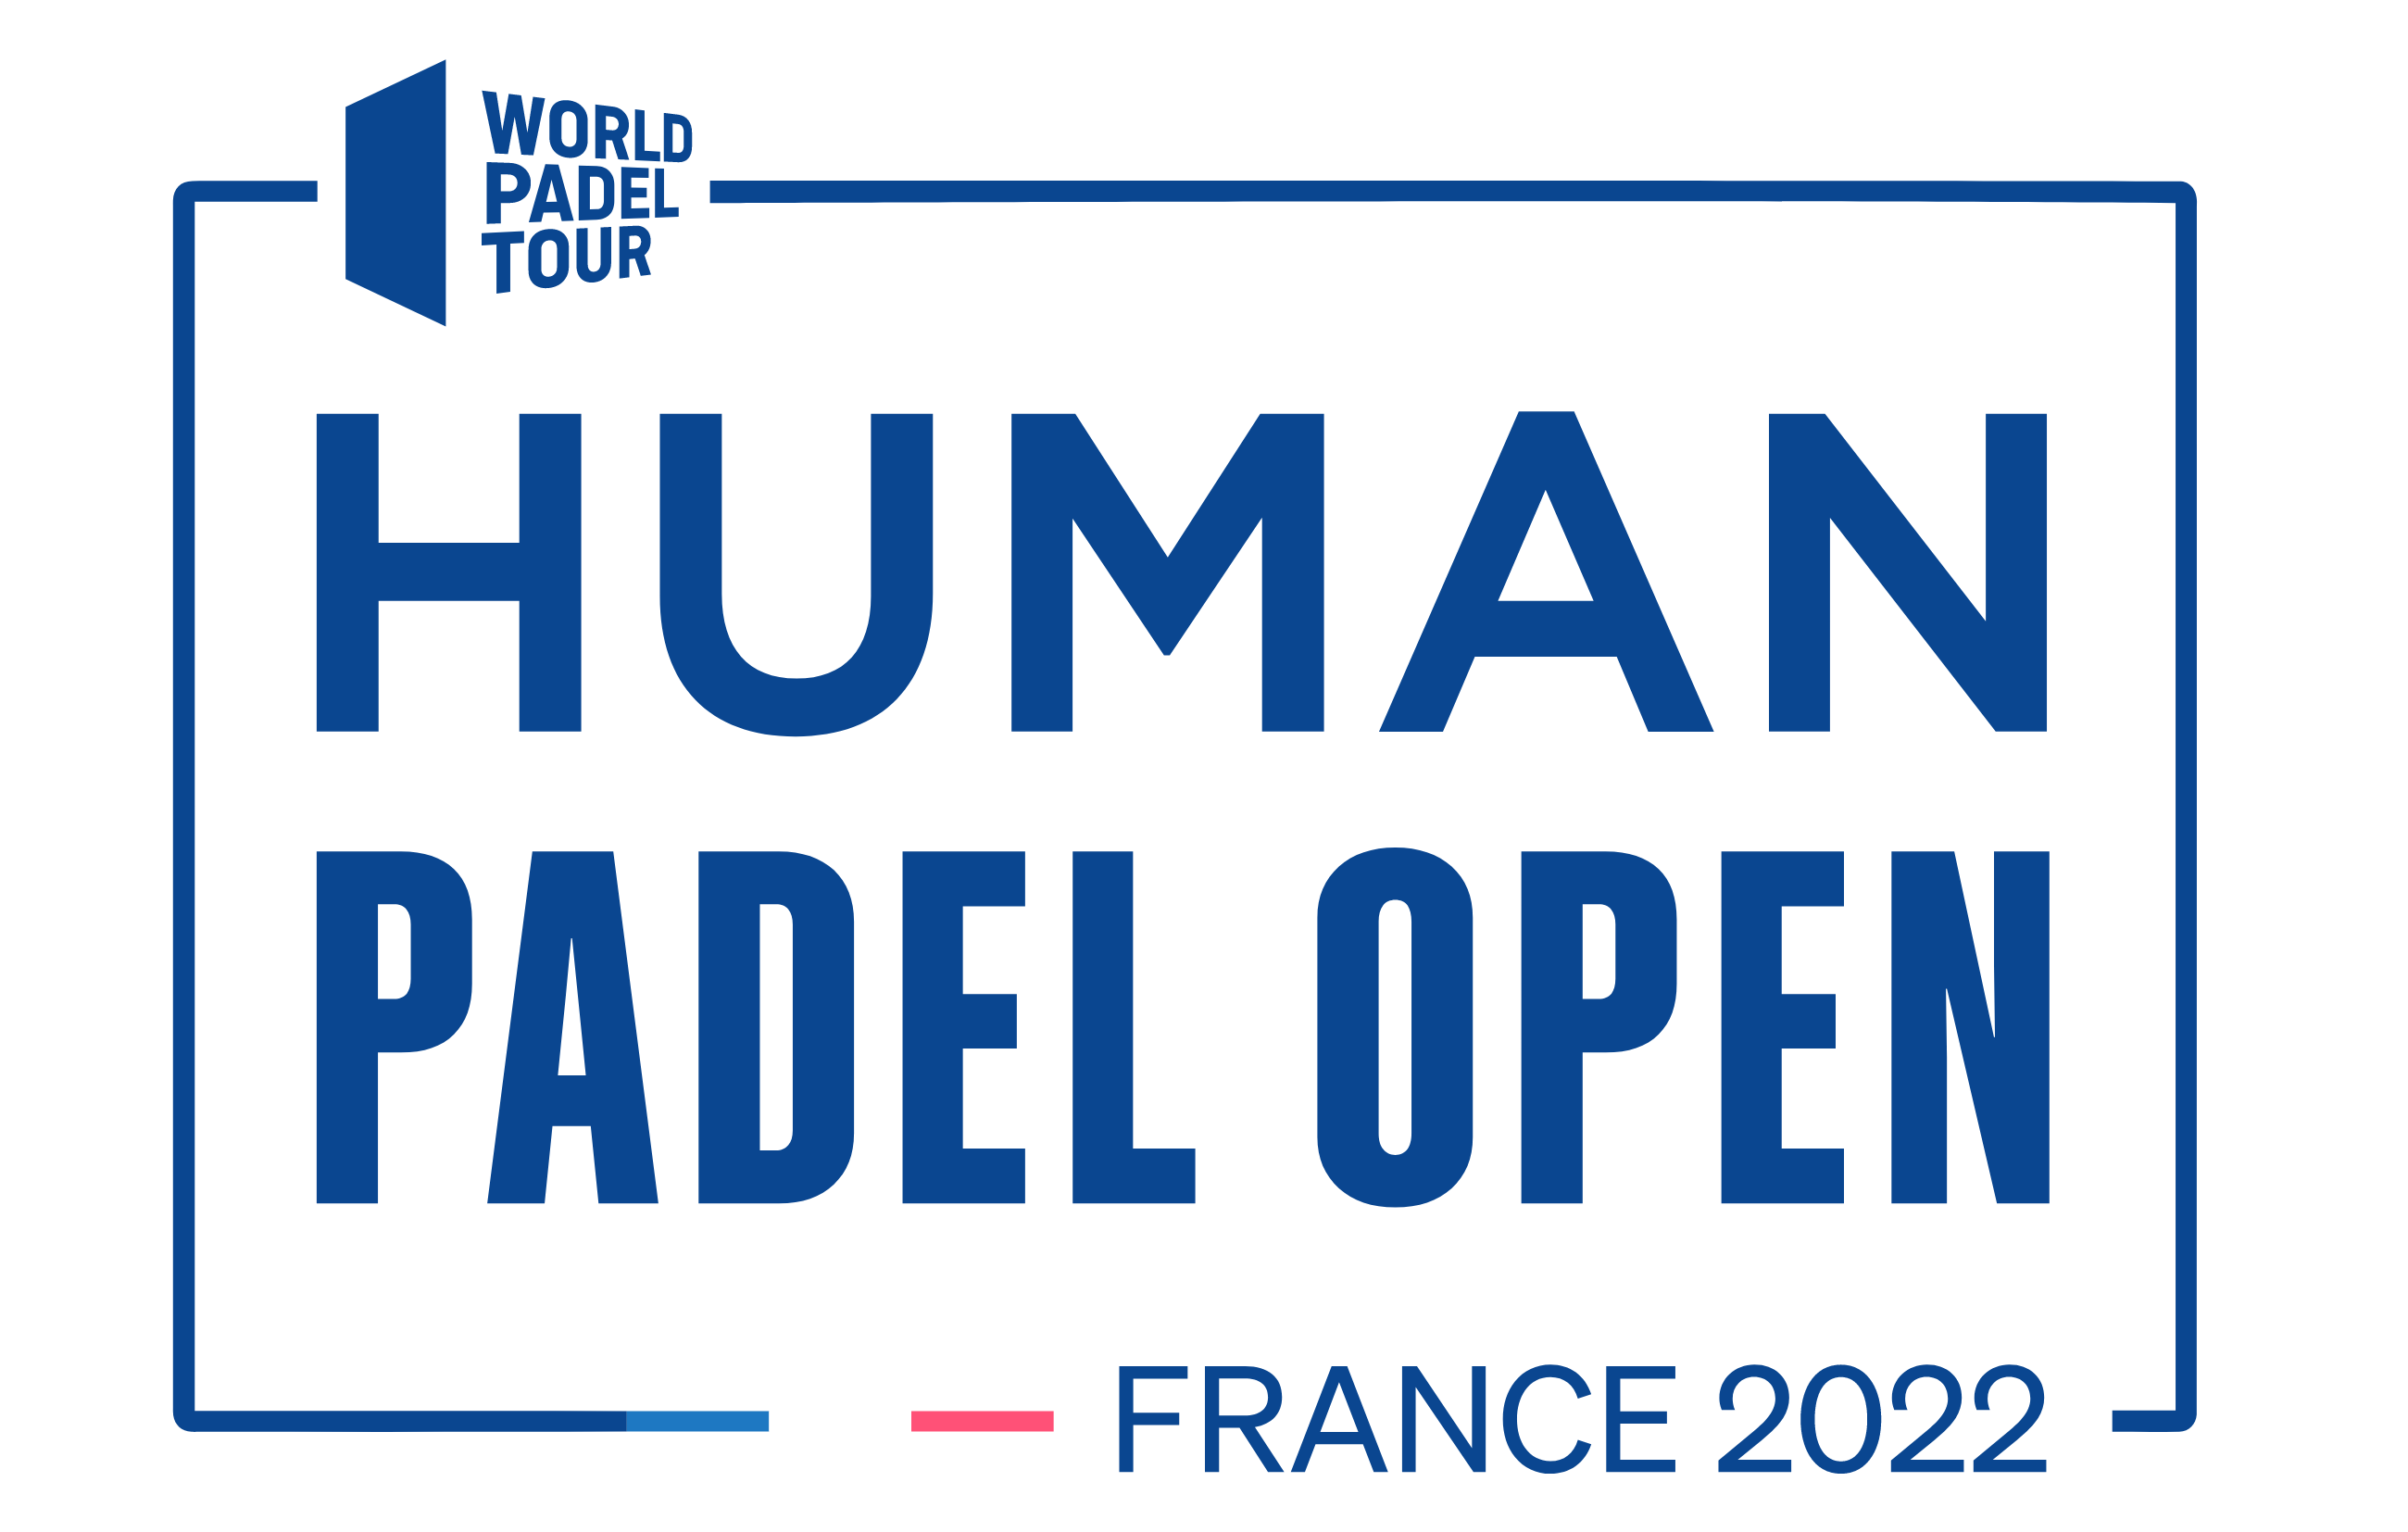 HUMAN PADEL ÅBEN world padel tour logo